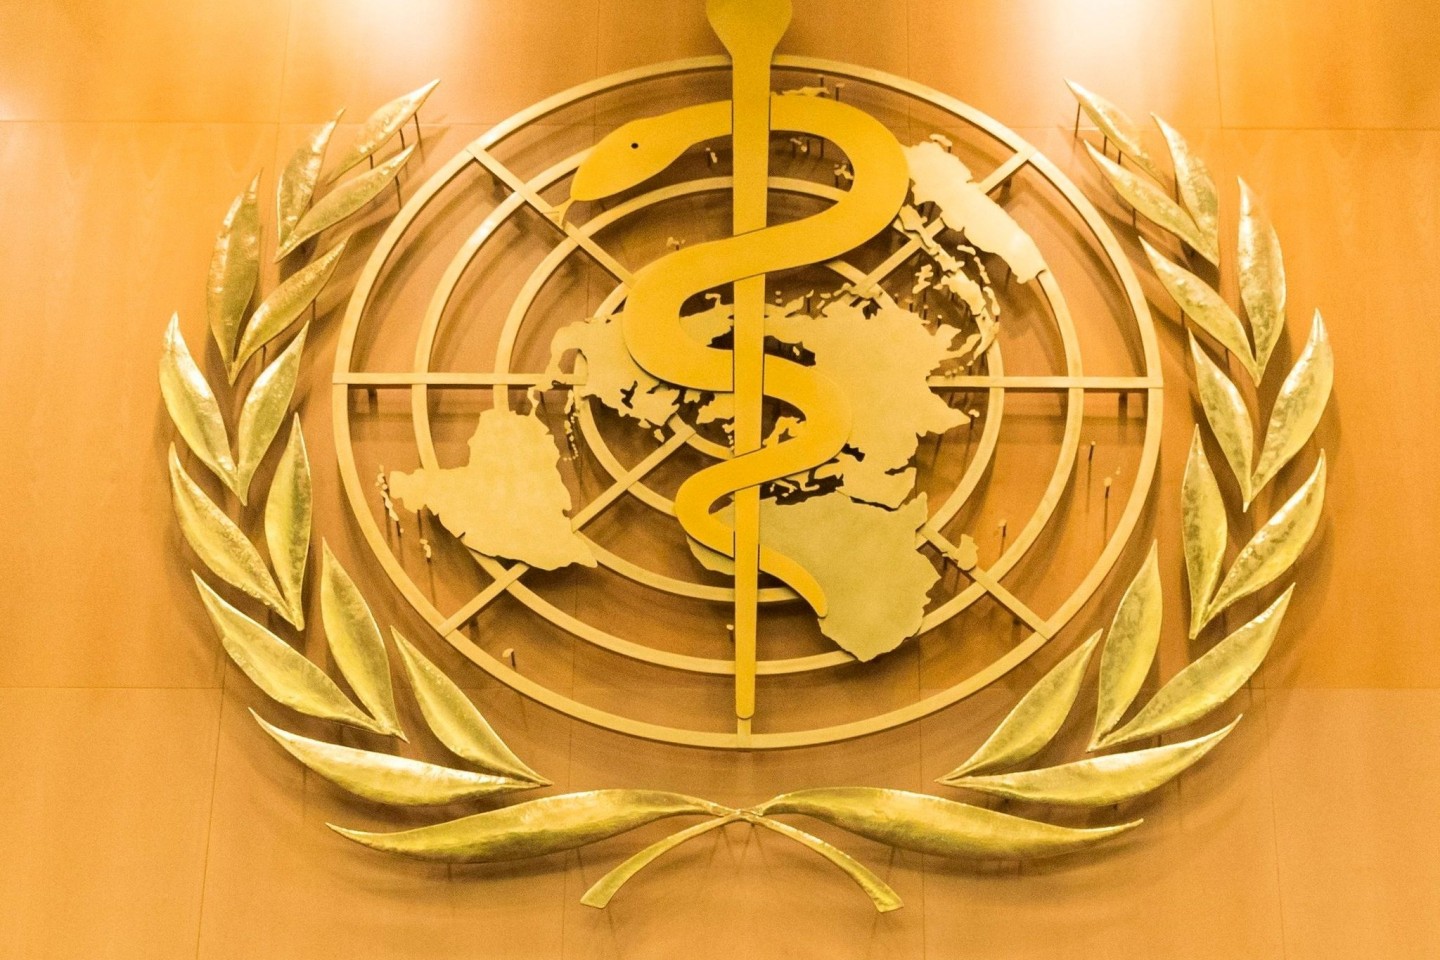 Die Weltgesundheitsorganisation (WHO) hat im vergangenen Jahr zu langsam auf erste Alarmzeichen einer möglichen Gesundheitsbedrohung reagiert. Zu diesem Schluss kommt eine von der WHO best...